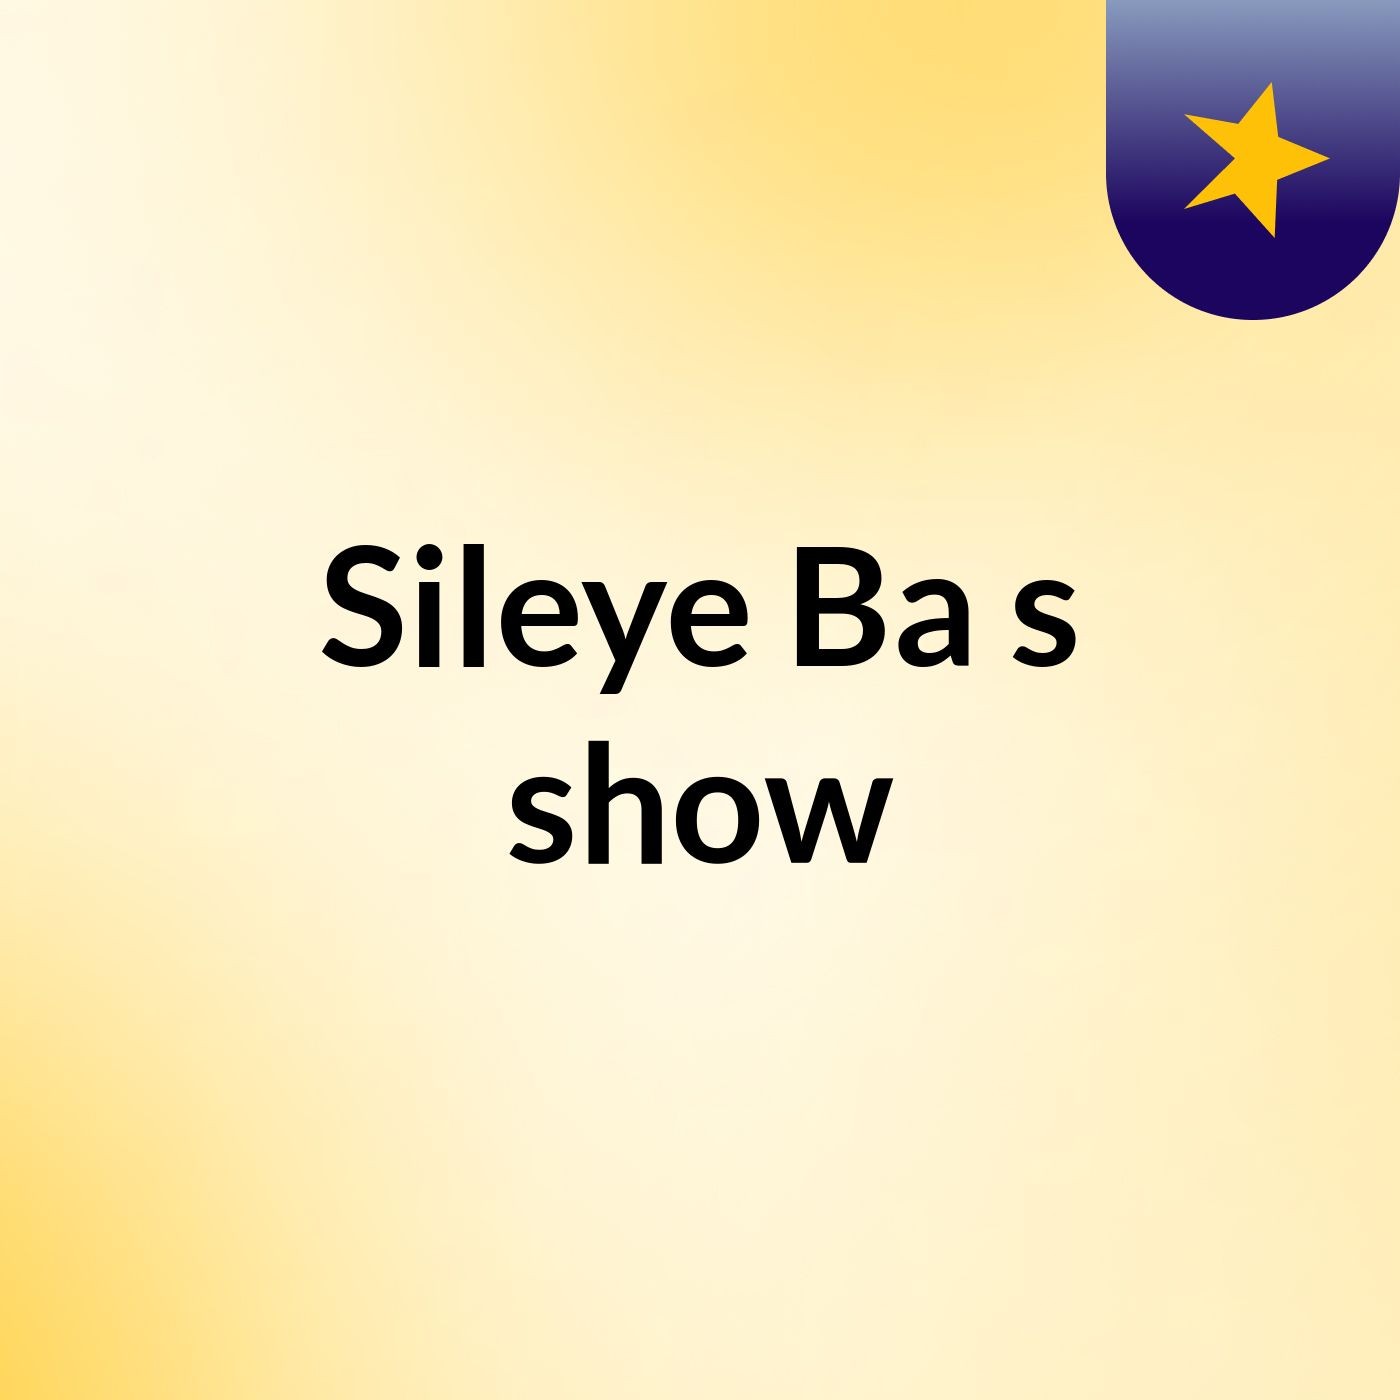 Sileye Ba's show